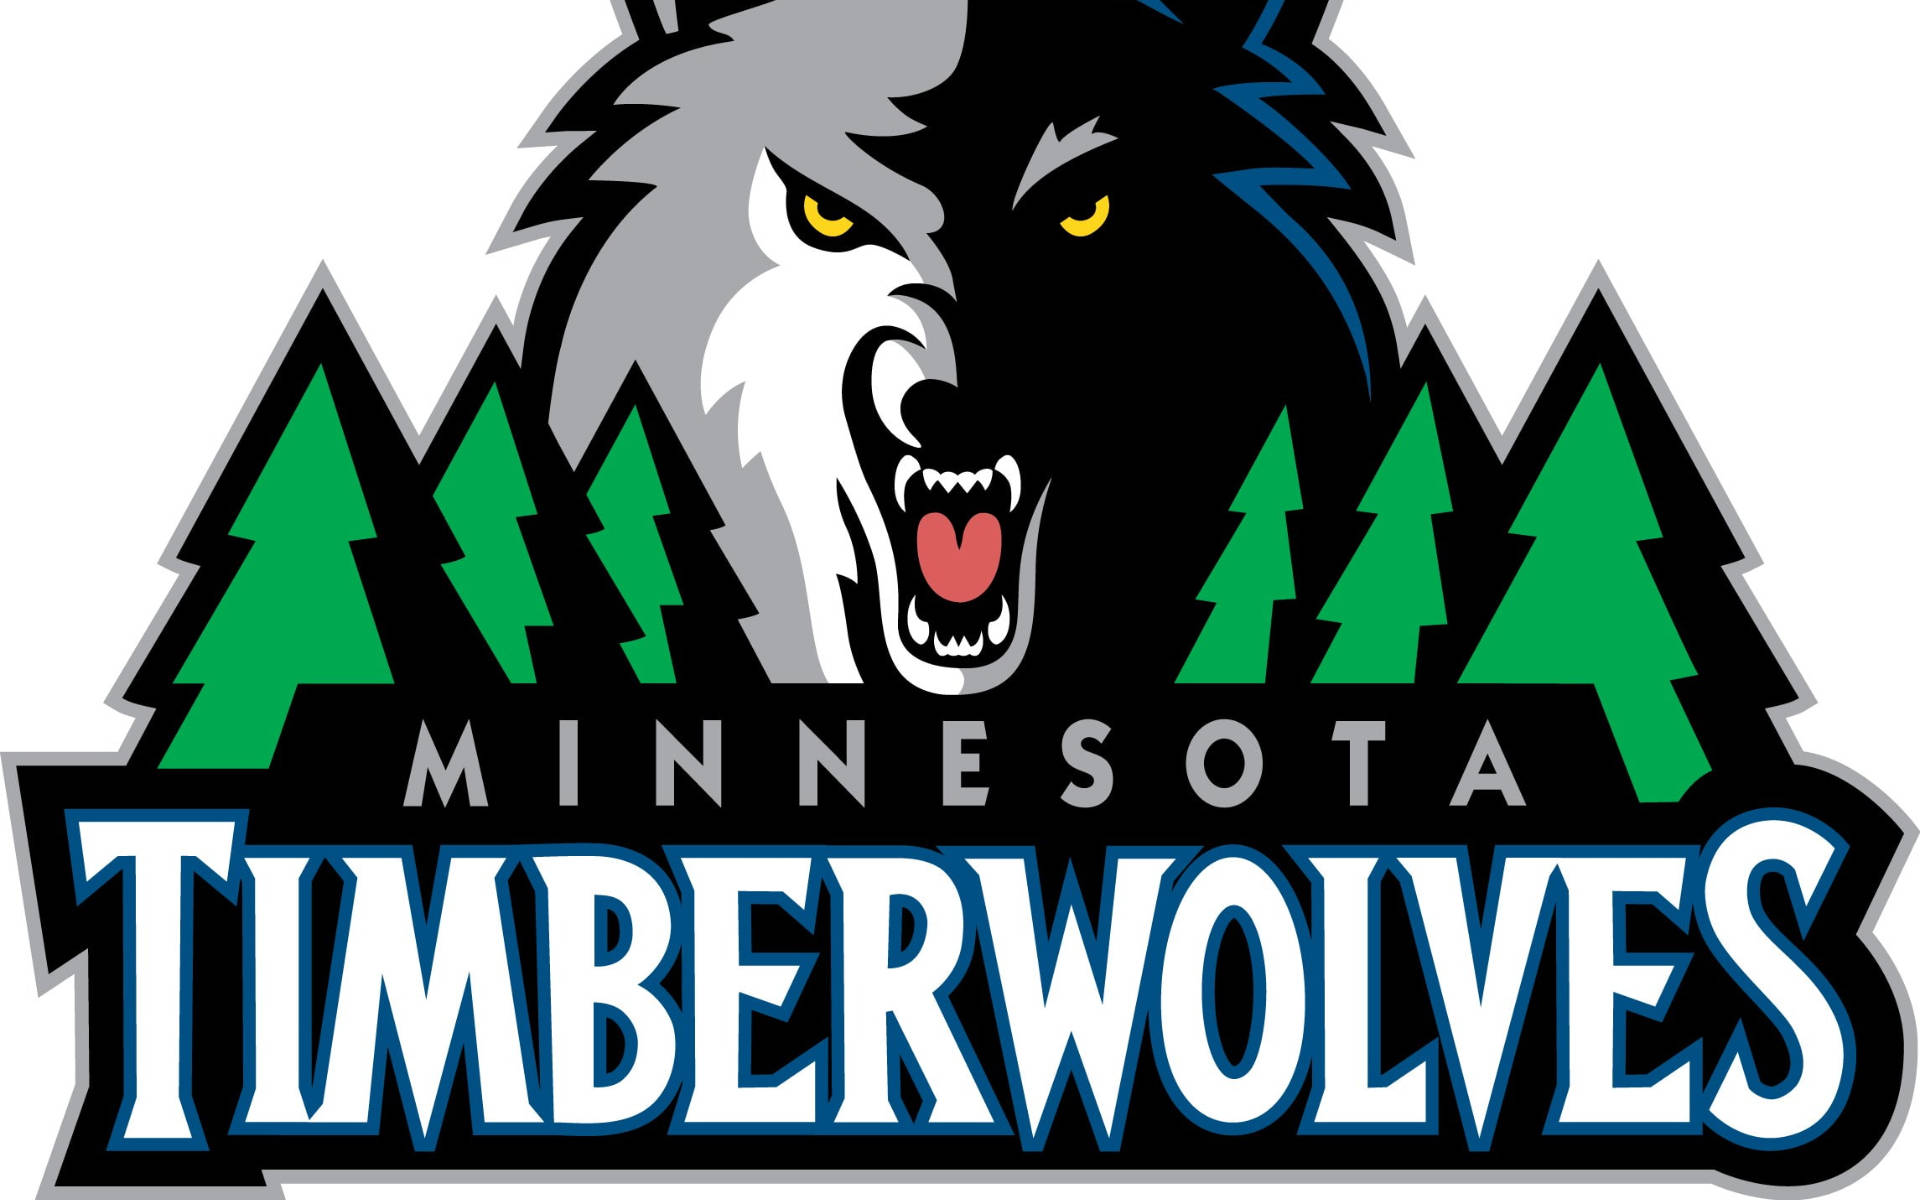 Minnesota Timberwolves Logo In White Wallpaper